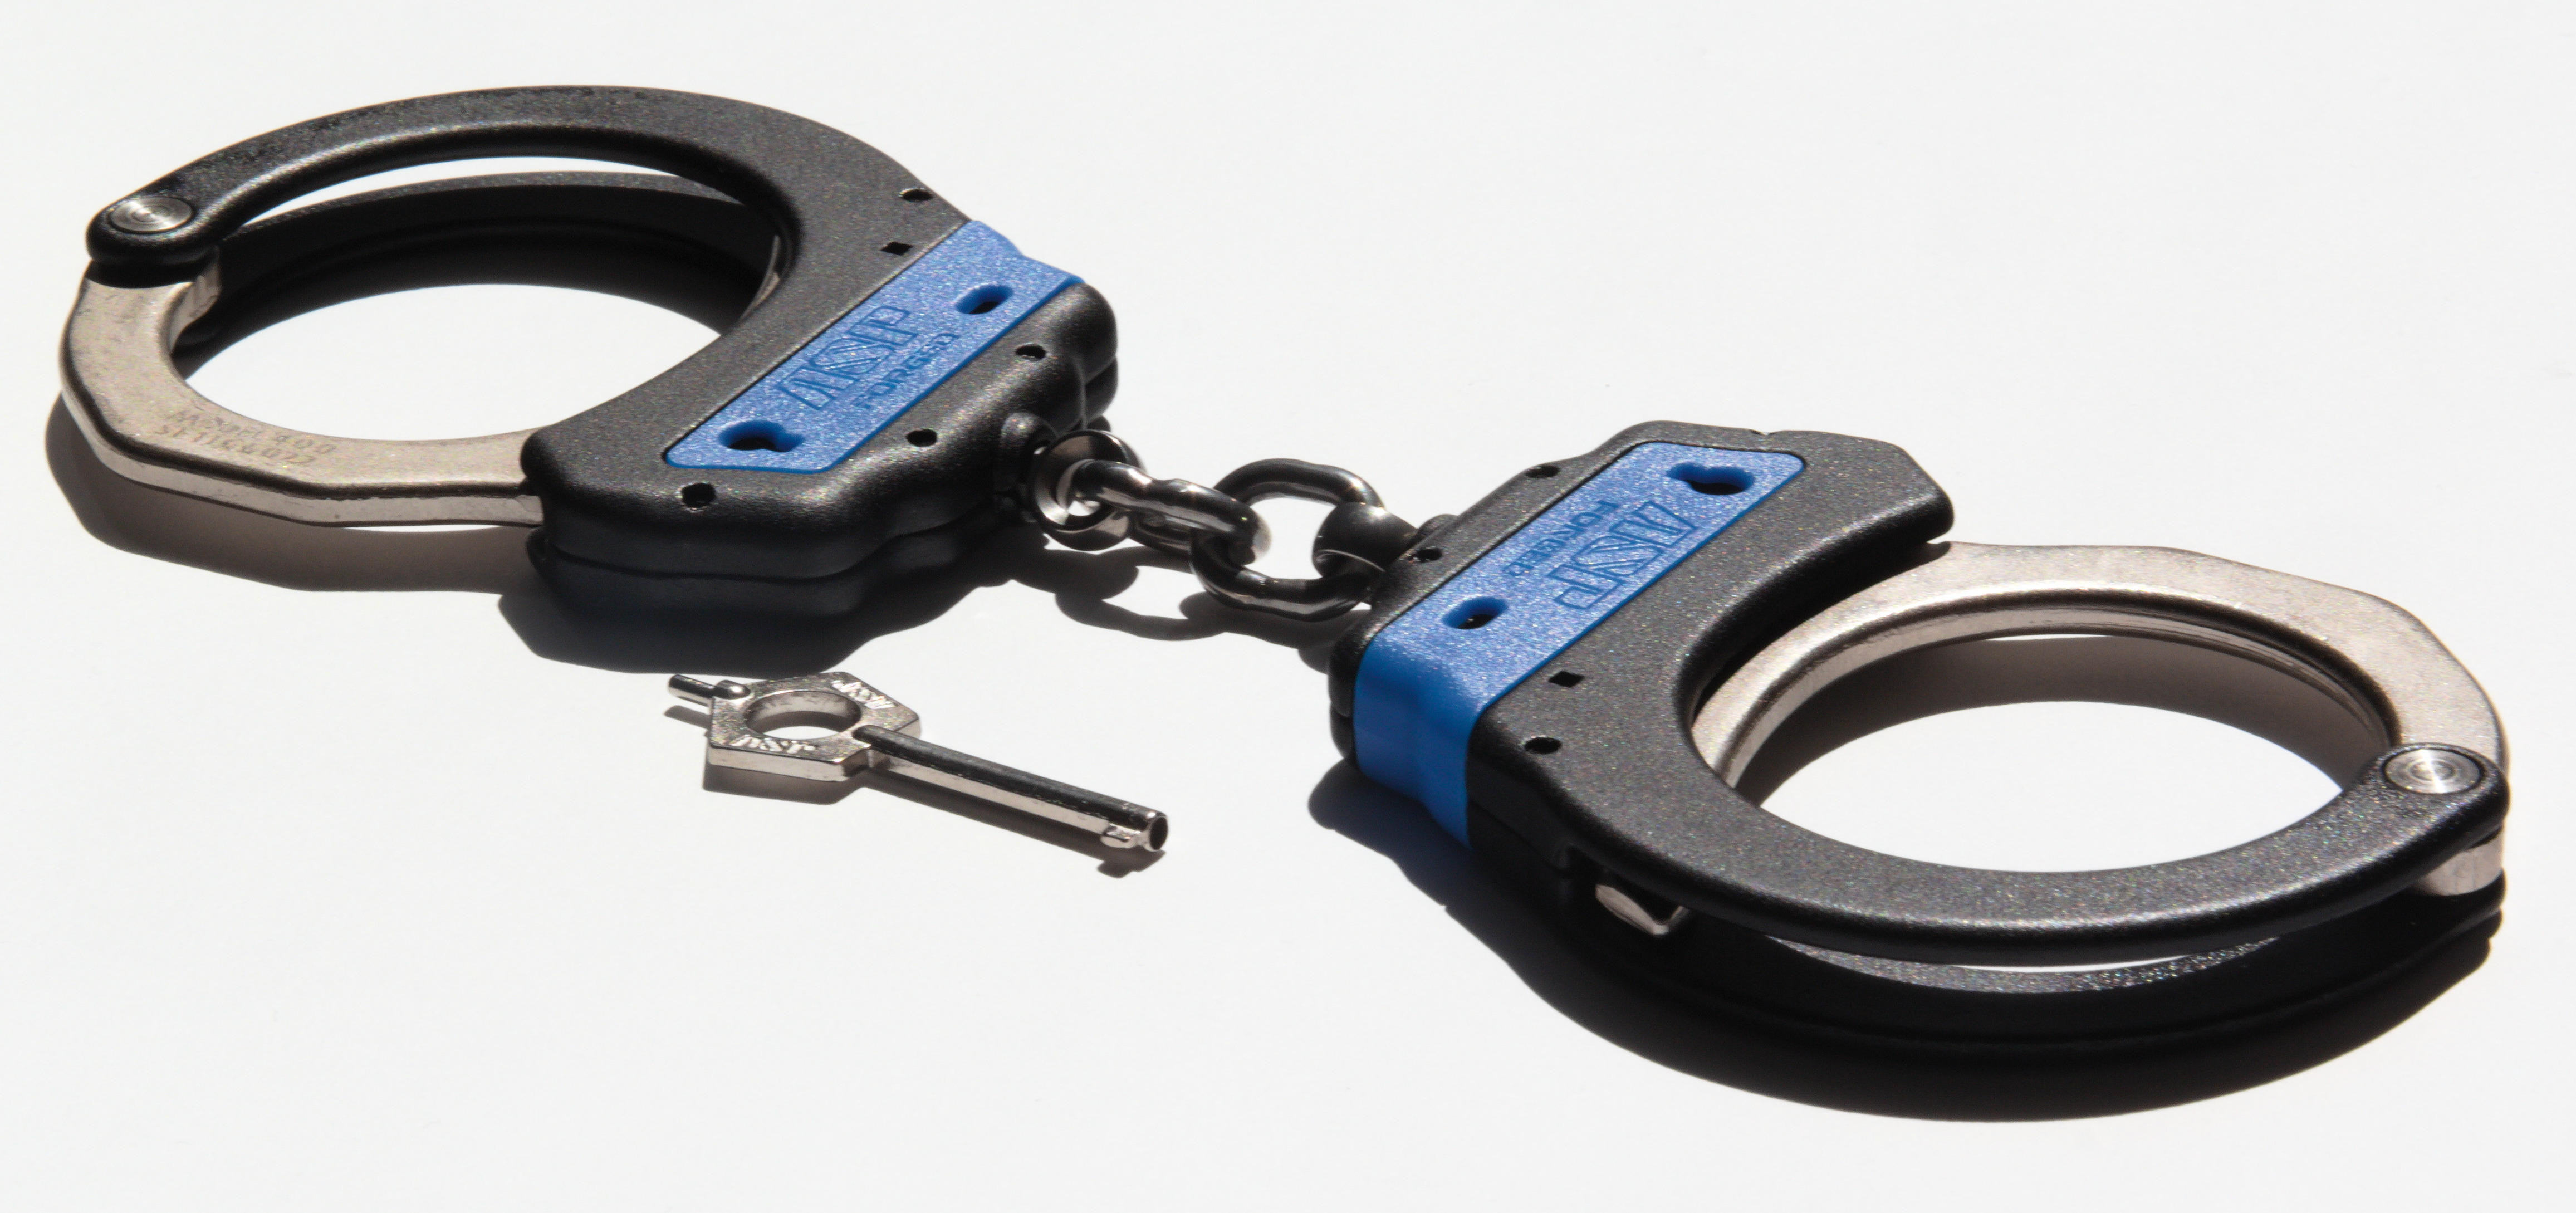 ASP Identifier Steel Chain Ultra Cuffs Blue (1Pawl) - 56001 / Model 400 Blue